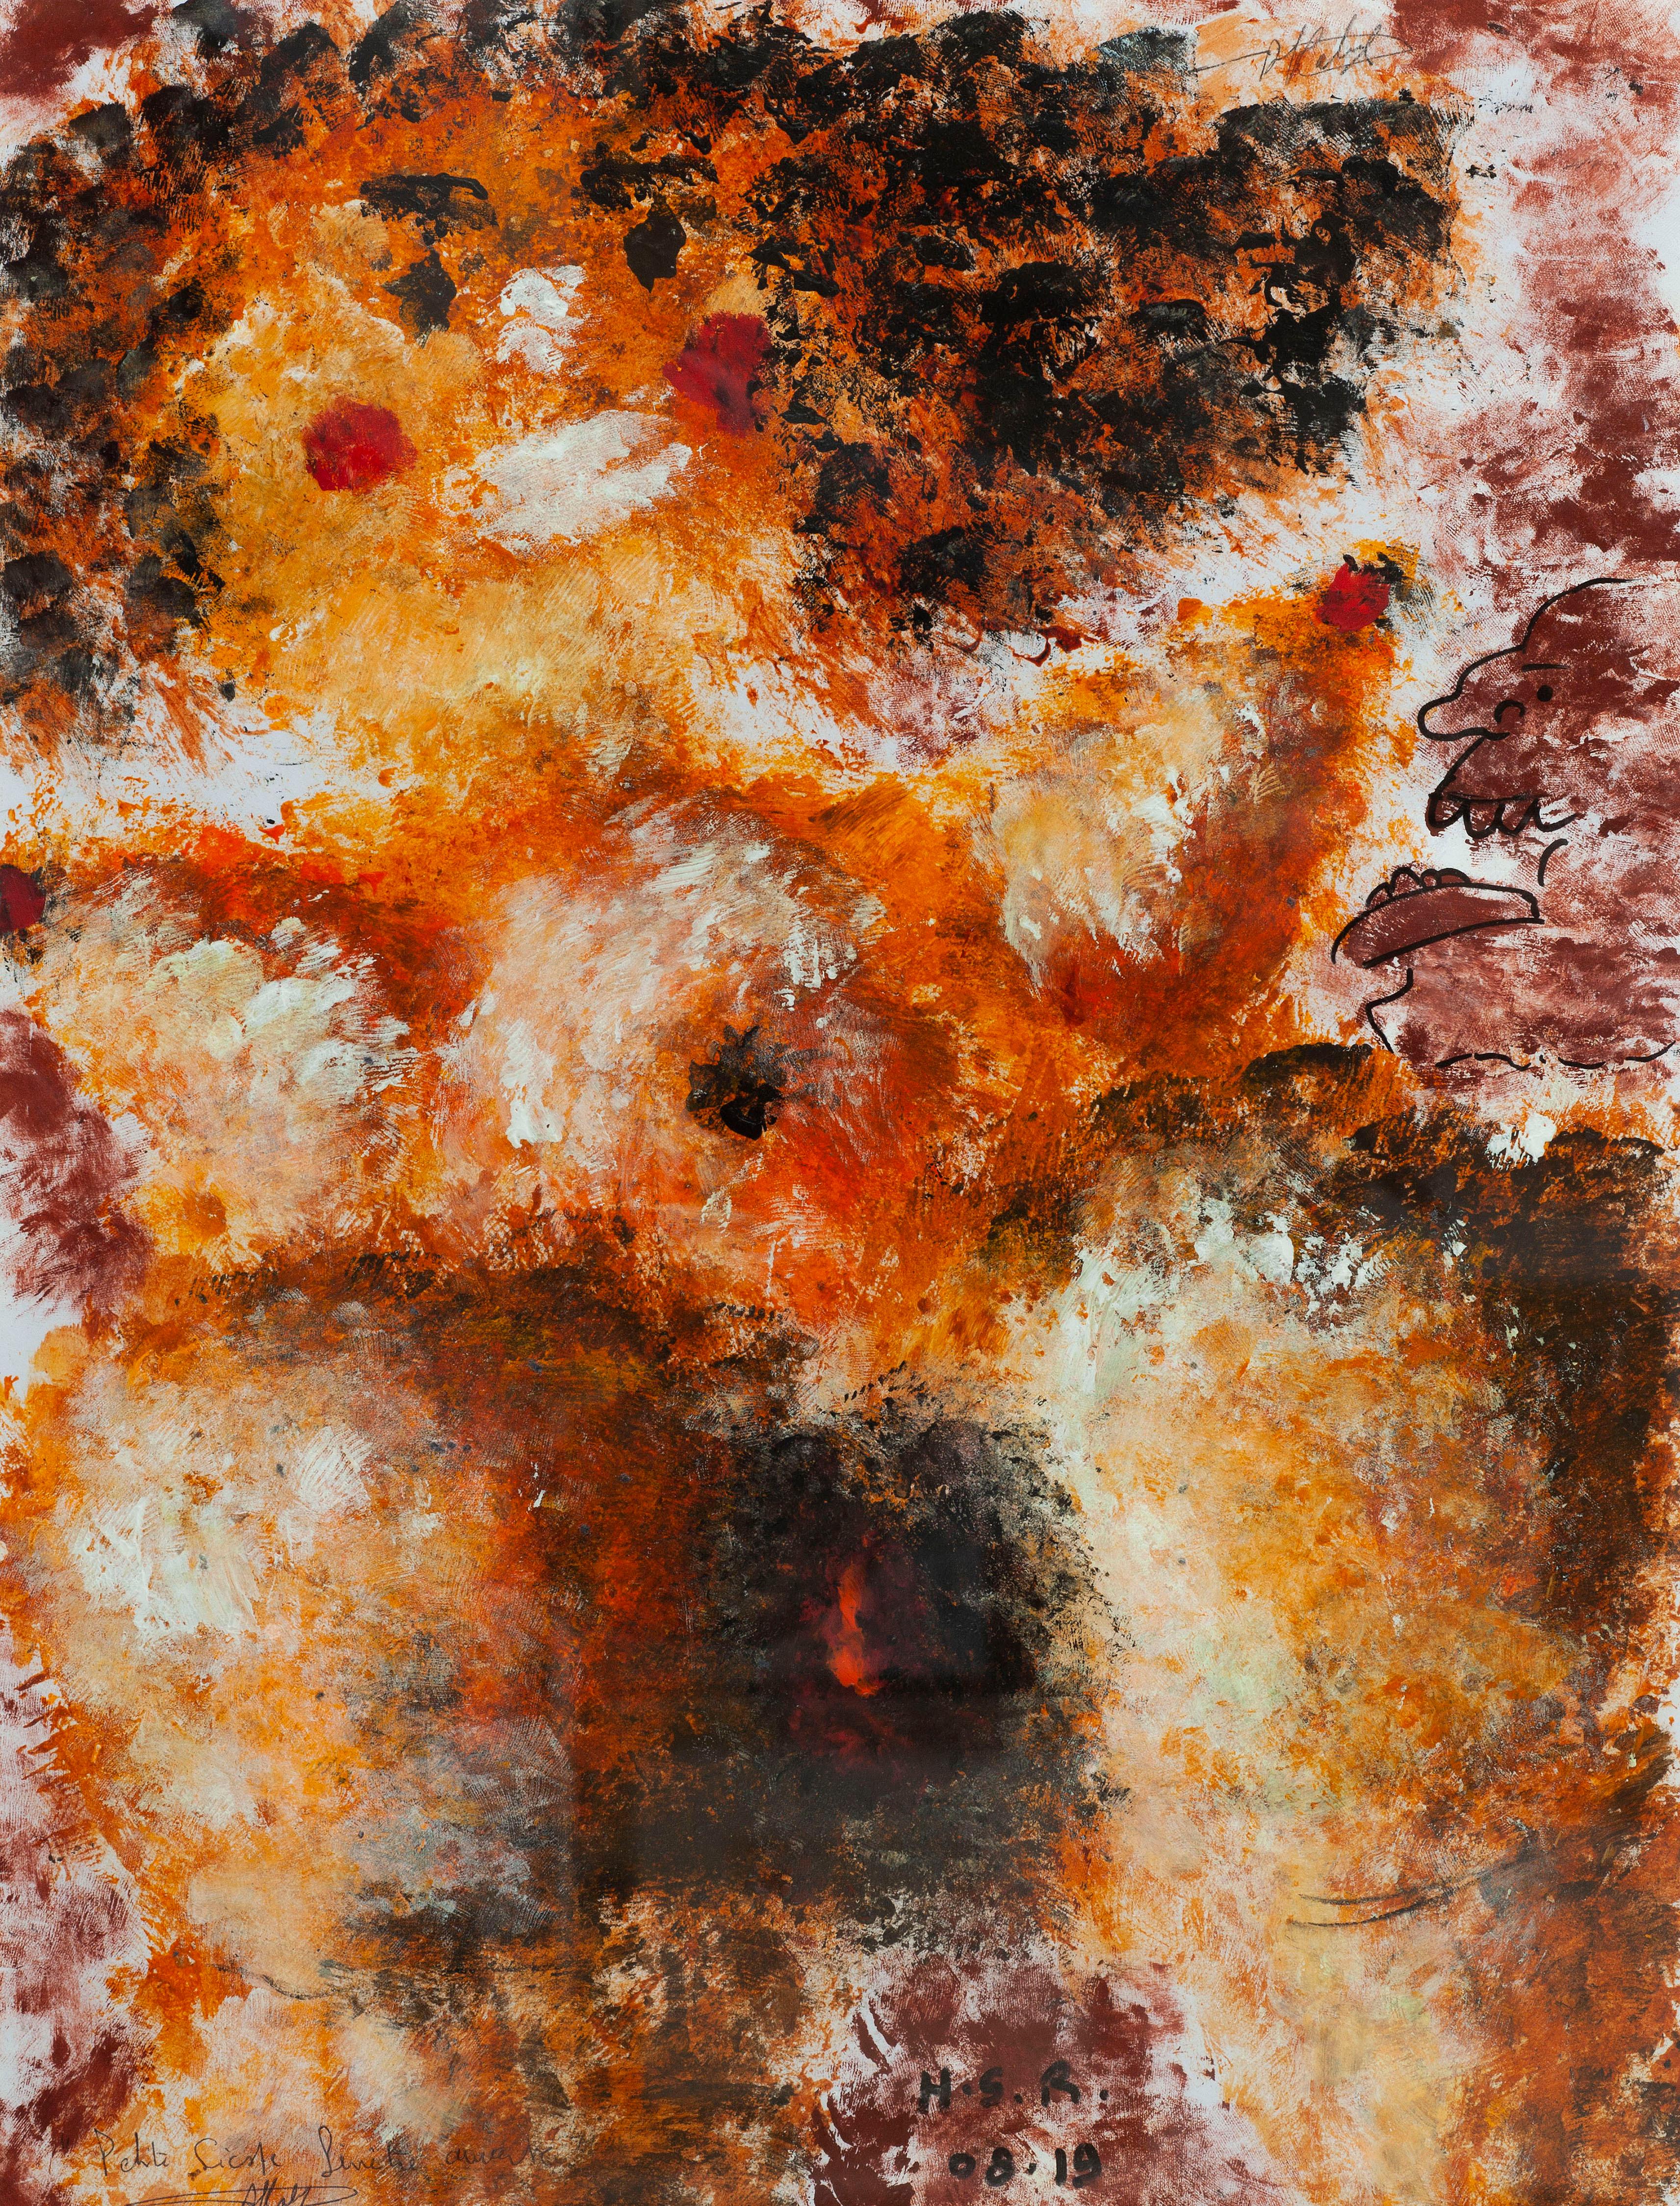 Abstract Painting Simon Richard Halimi - Petite fenêtre ouverte de nuit - Sponge acrylique sur papier jaune, orange, blanc, brun et rouge